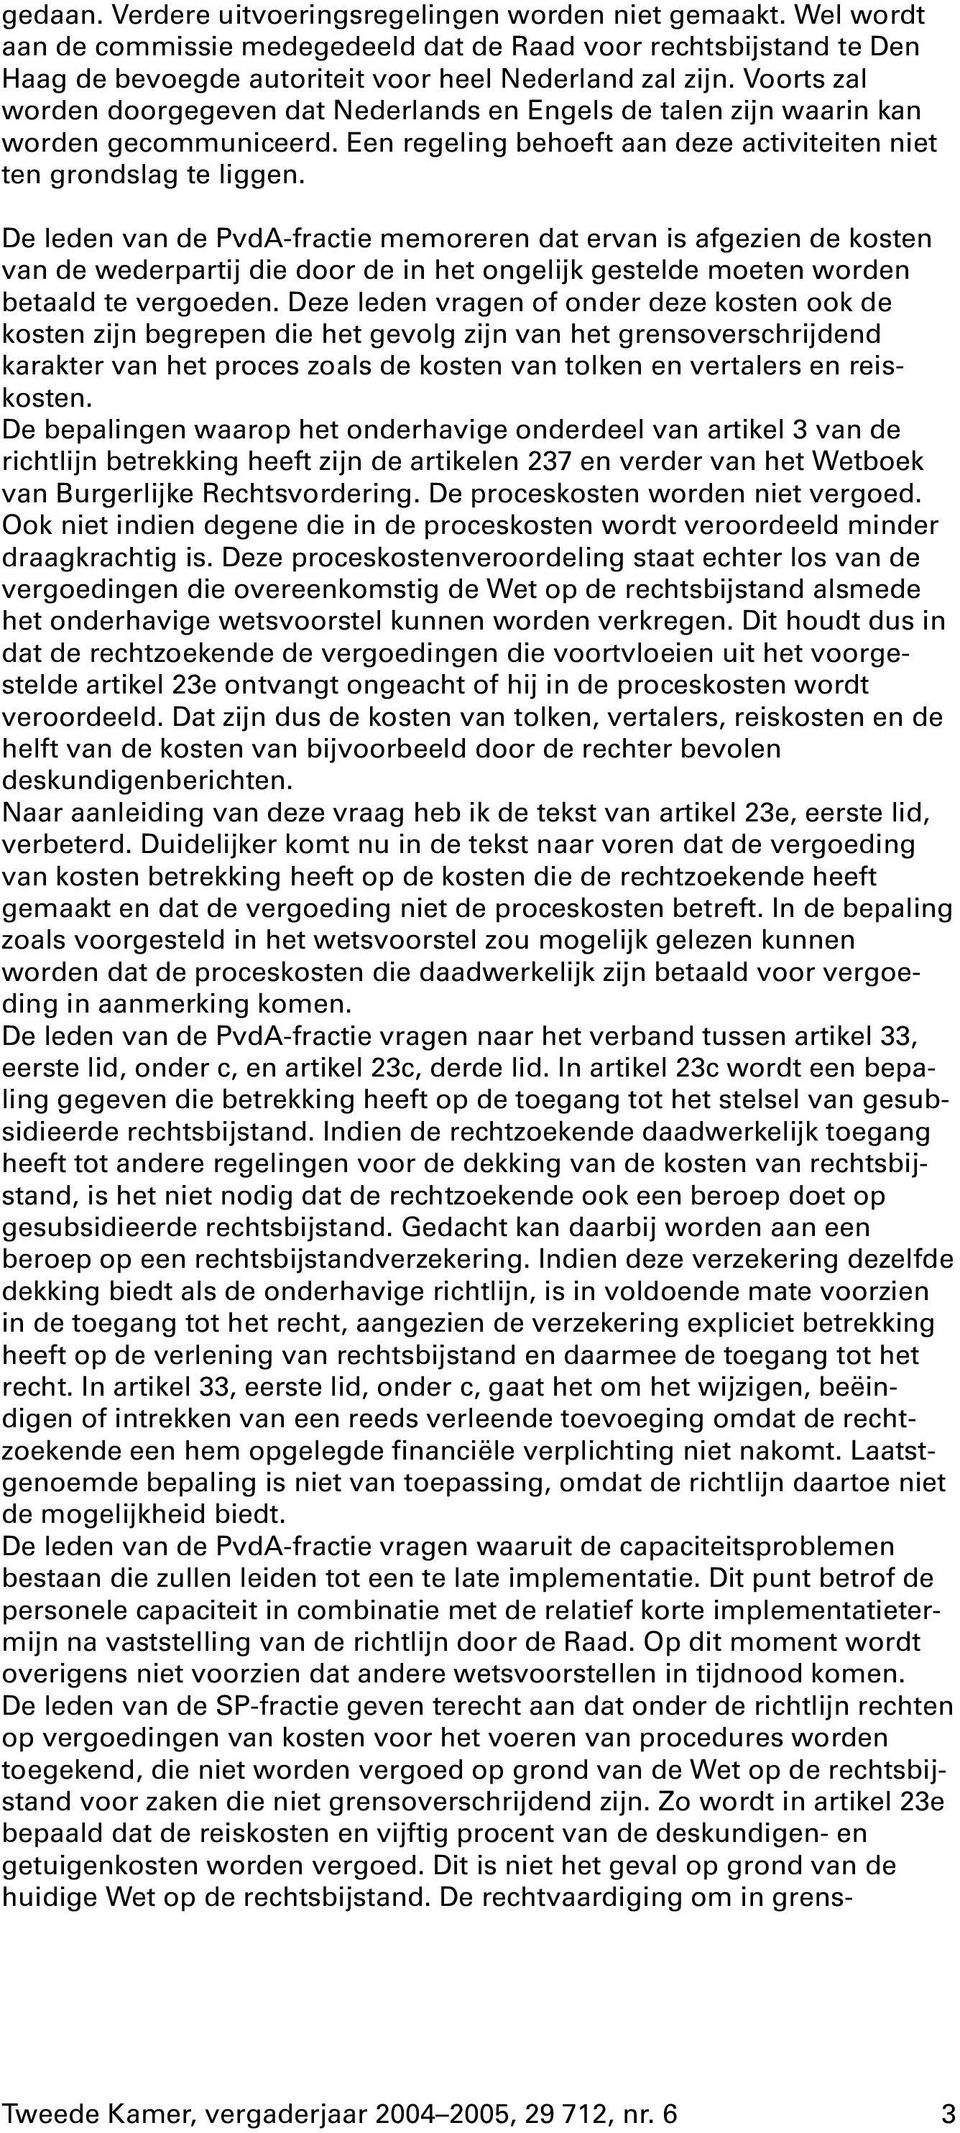 De leden van de PvdA-fractie memoreren dat ervan is afgezien de kosten van de wederpartij die door de in het ongelijk gestelde moeten worden betaald te vergoeden.